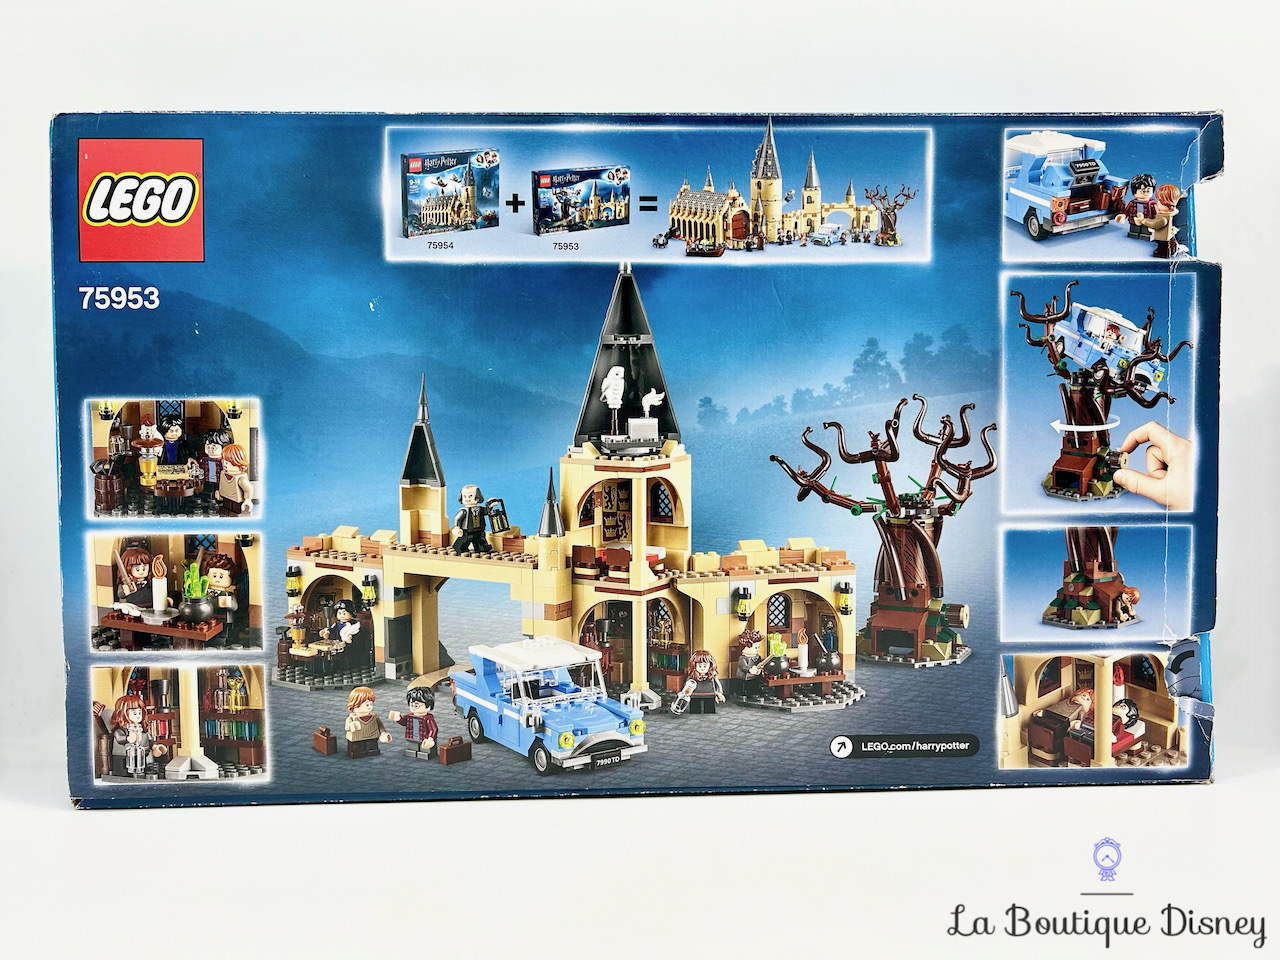 jouet-lego-75953-le-saule-cogneur-du-chateau-de-poudlard-harry-potter-3